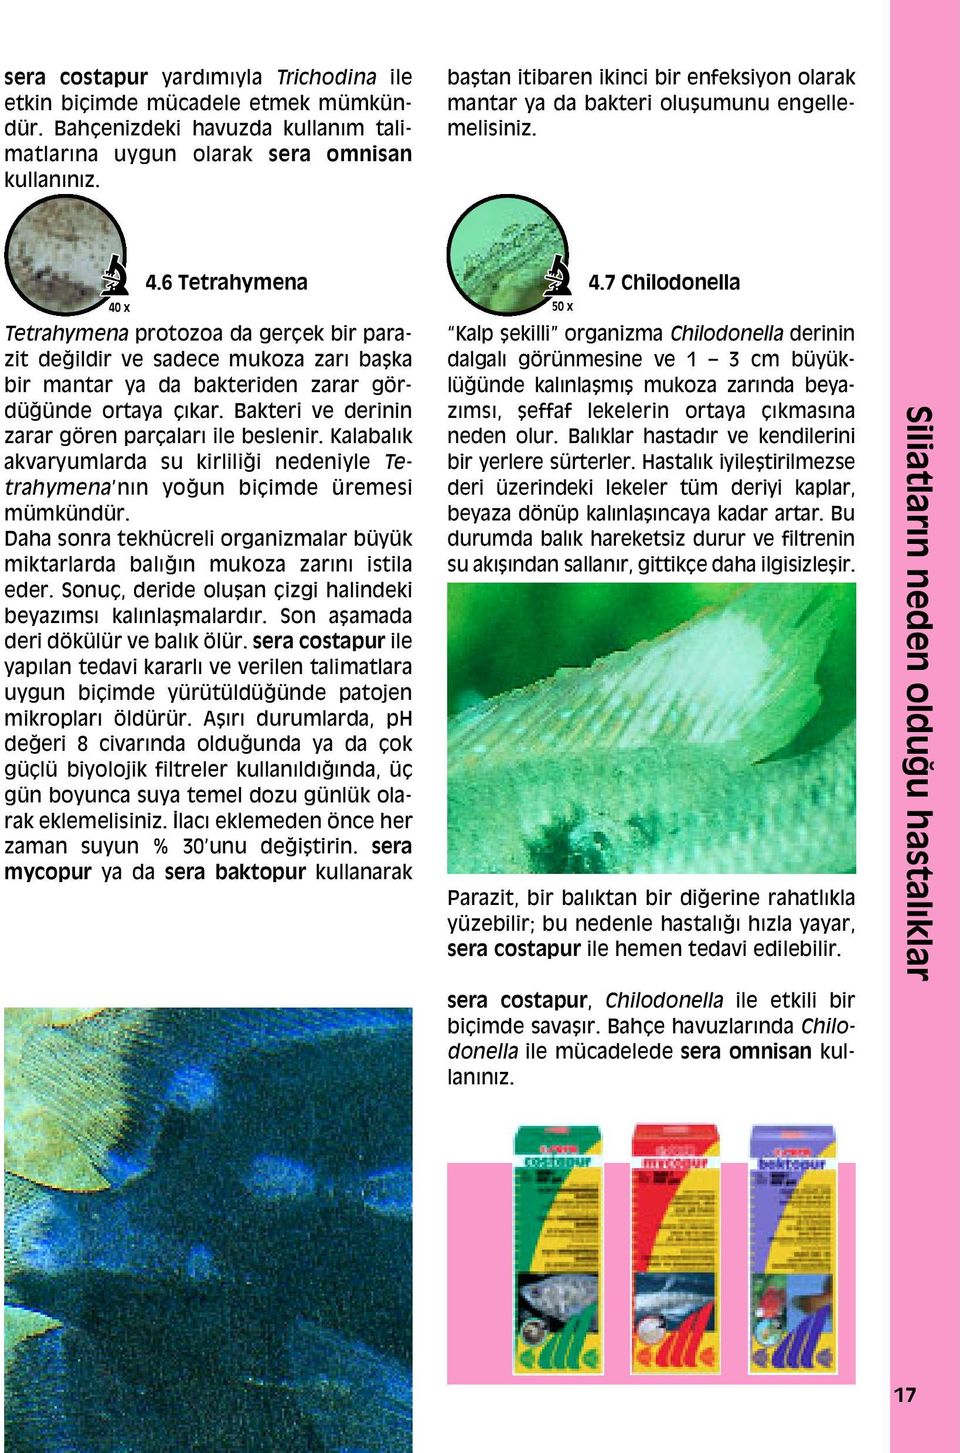 6 Tetrahymena 40 x 50 x Tetrahymena protozoa da geráek bir parazit deappleildir ve sadece mukoza zarı ba ka bir mantar ya da bakteriden zarar gördüappleünde ortaya Áıkar.